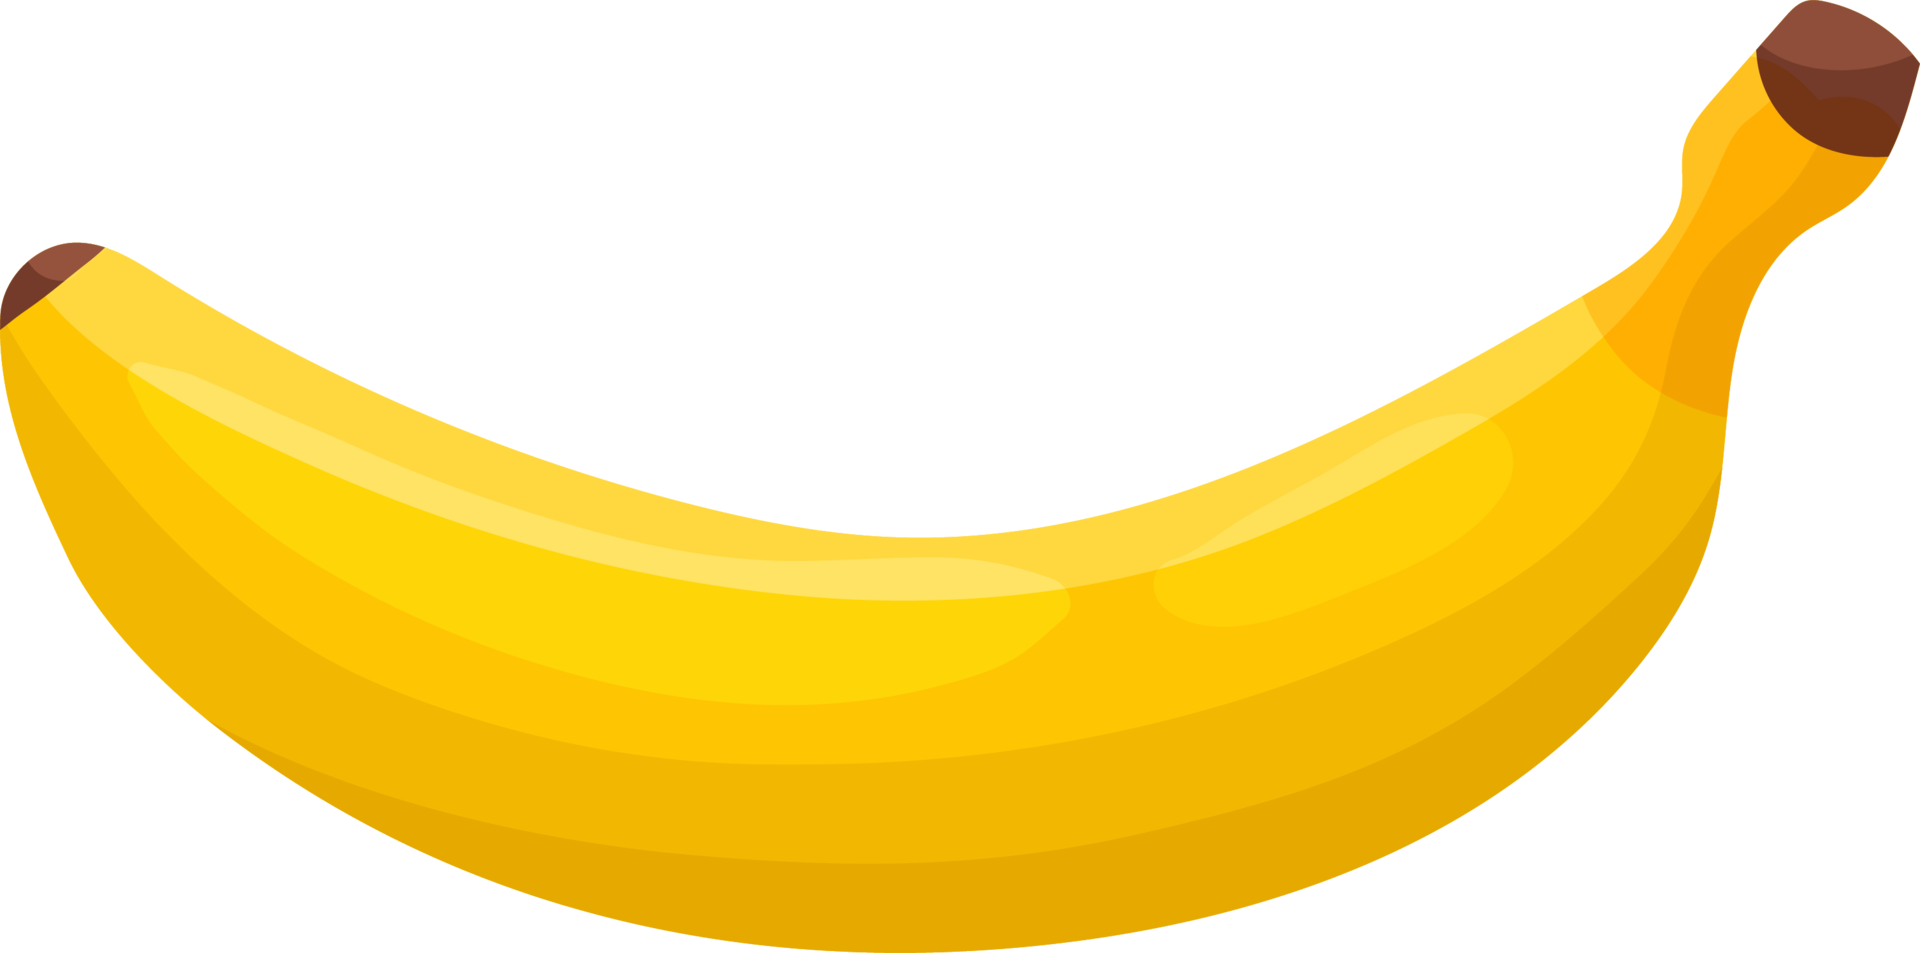 banan är en gul frukt. png